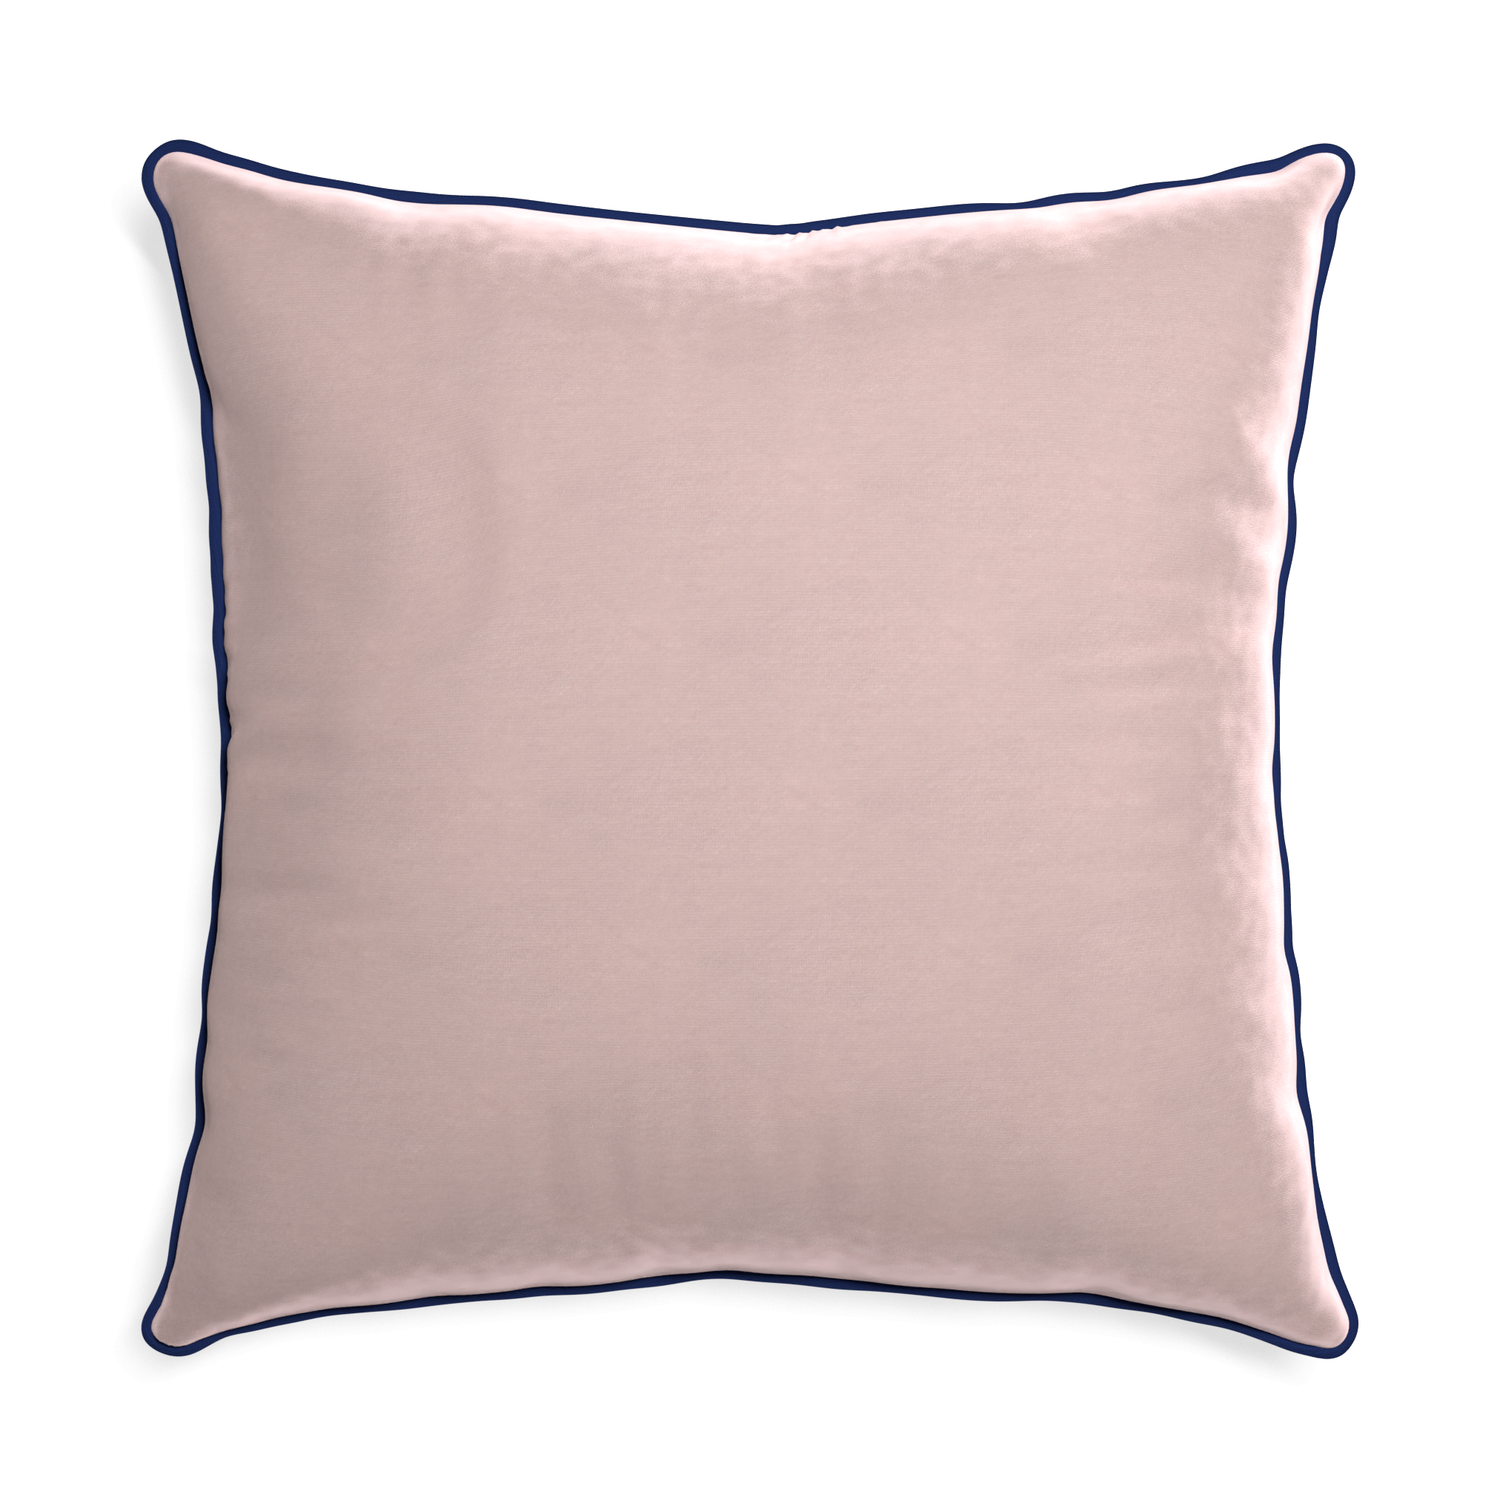 Euro-sham rose velvet custom pillow with midnight piping on white background